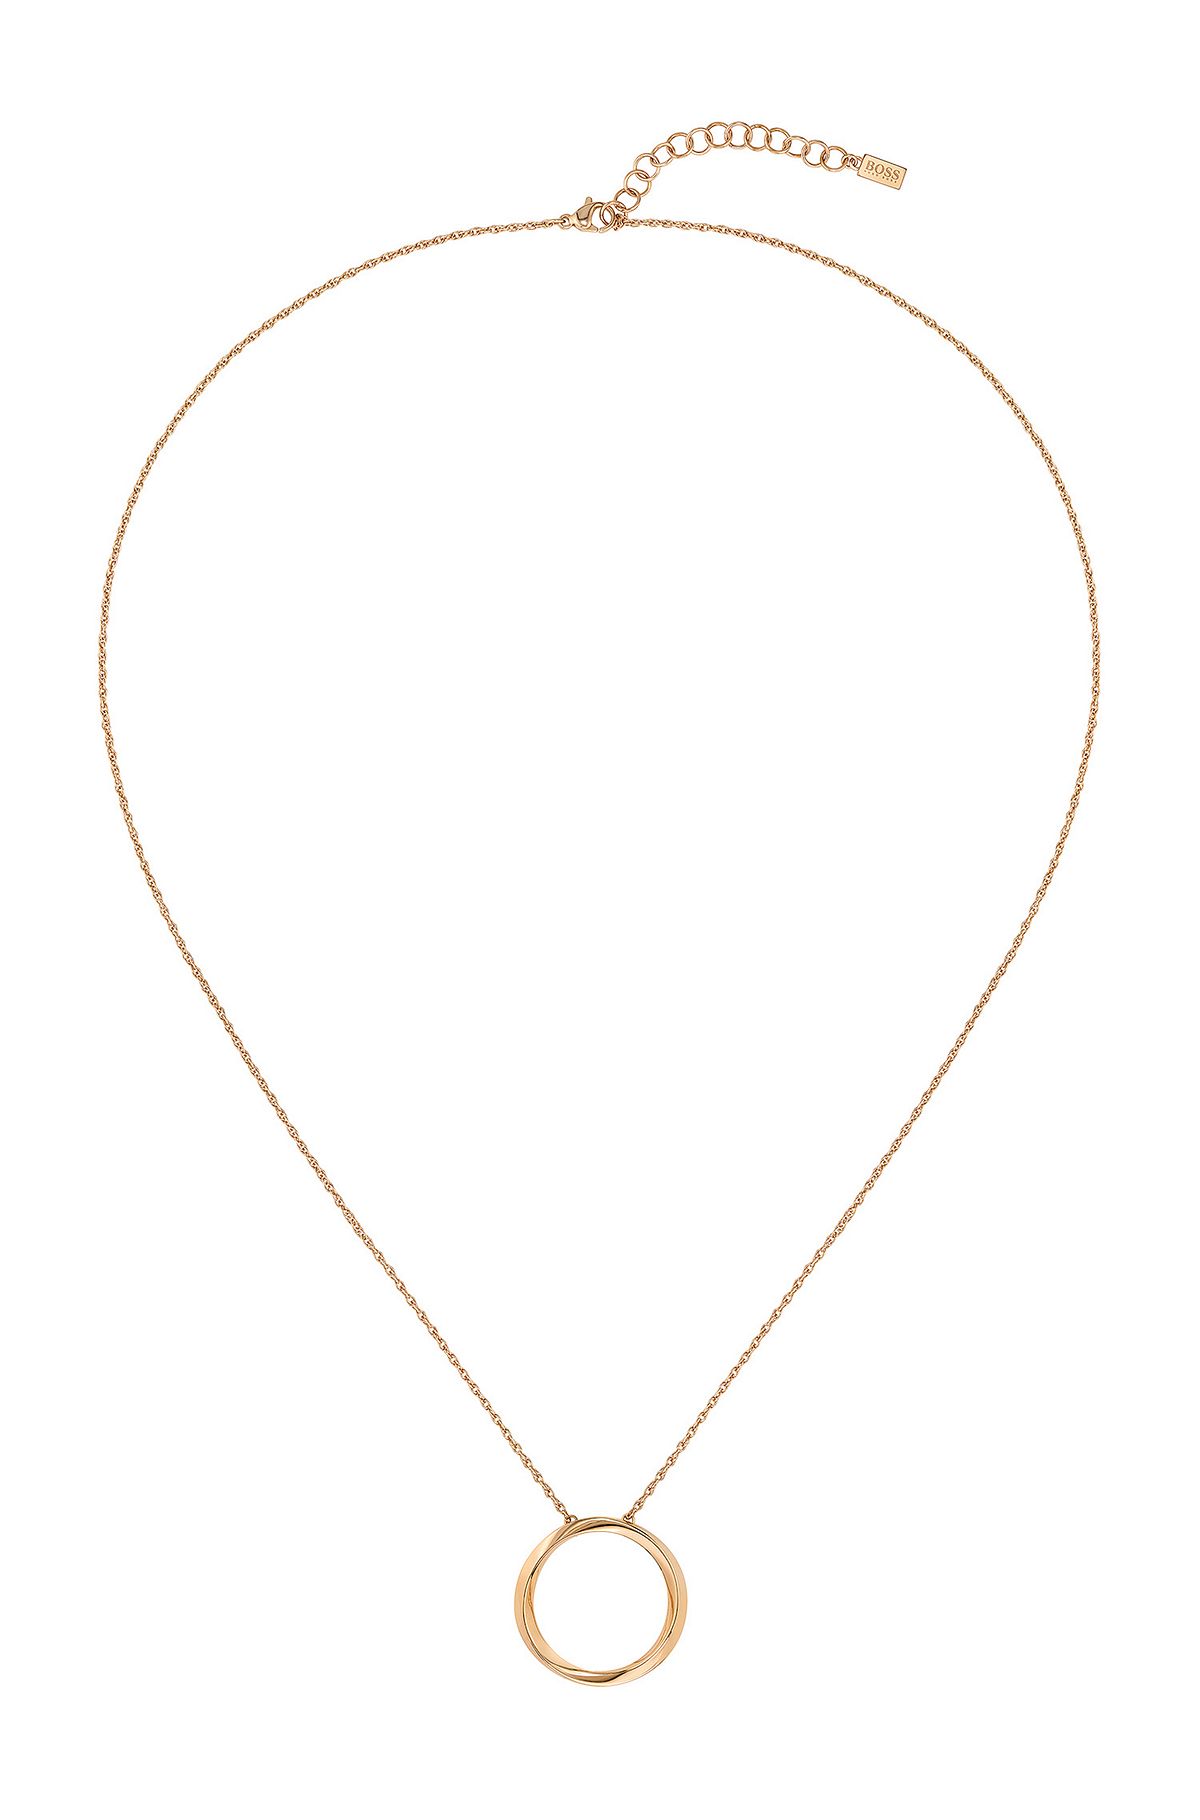 Halsketting in goudlook met gedraaide ring als hanger, goud